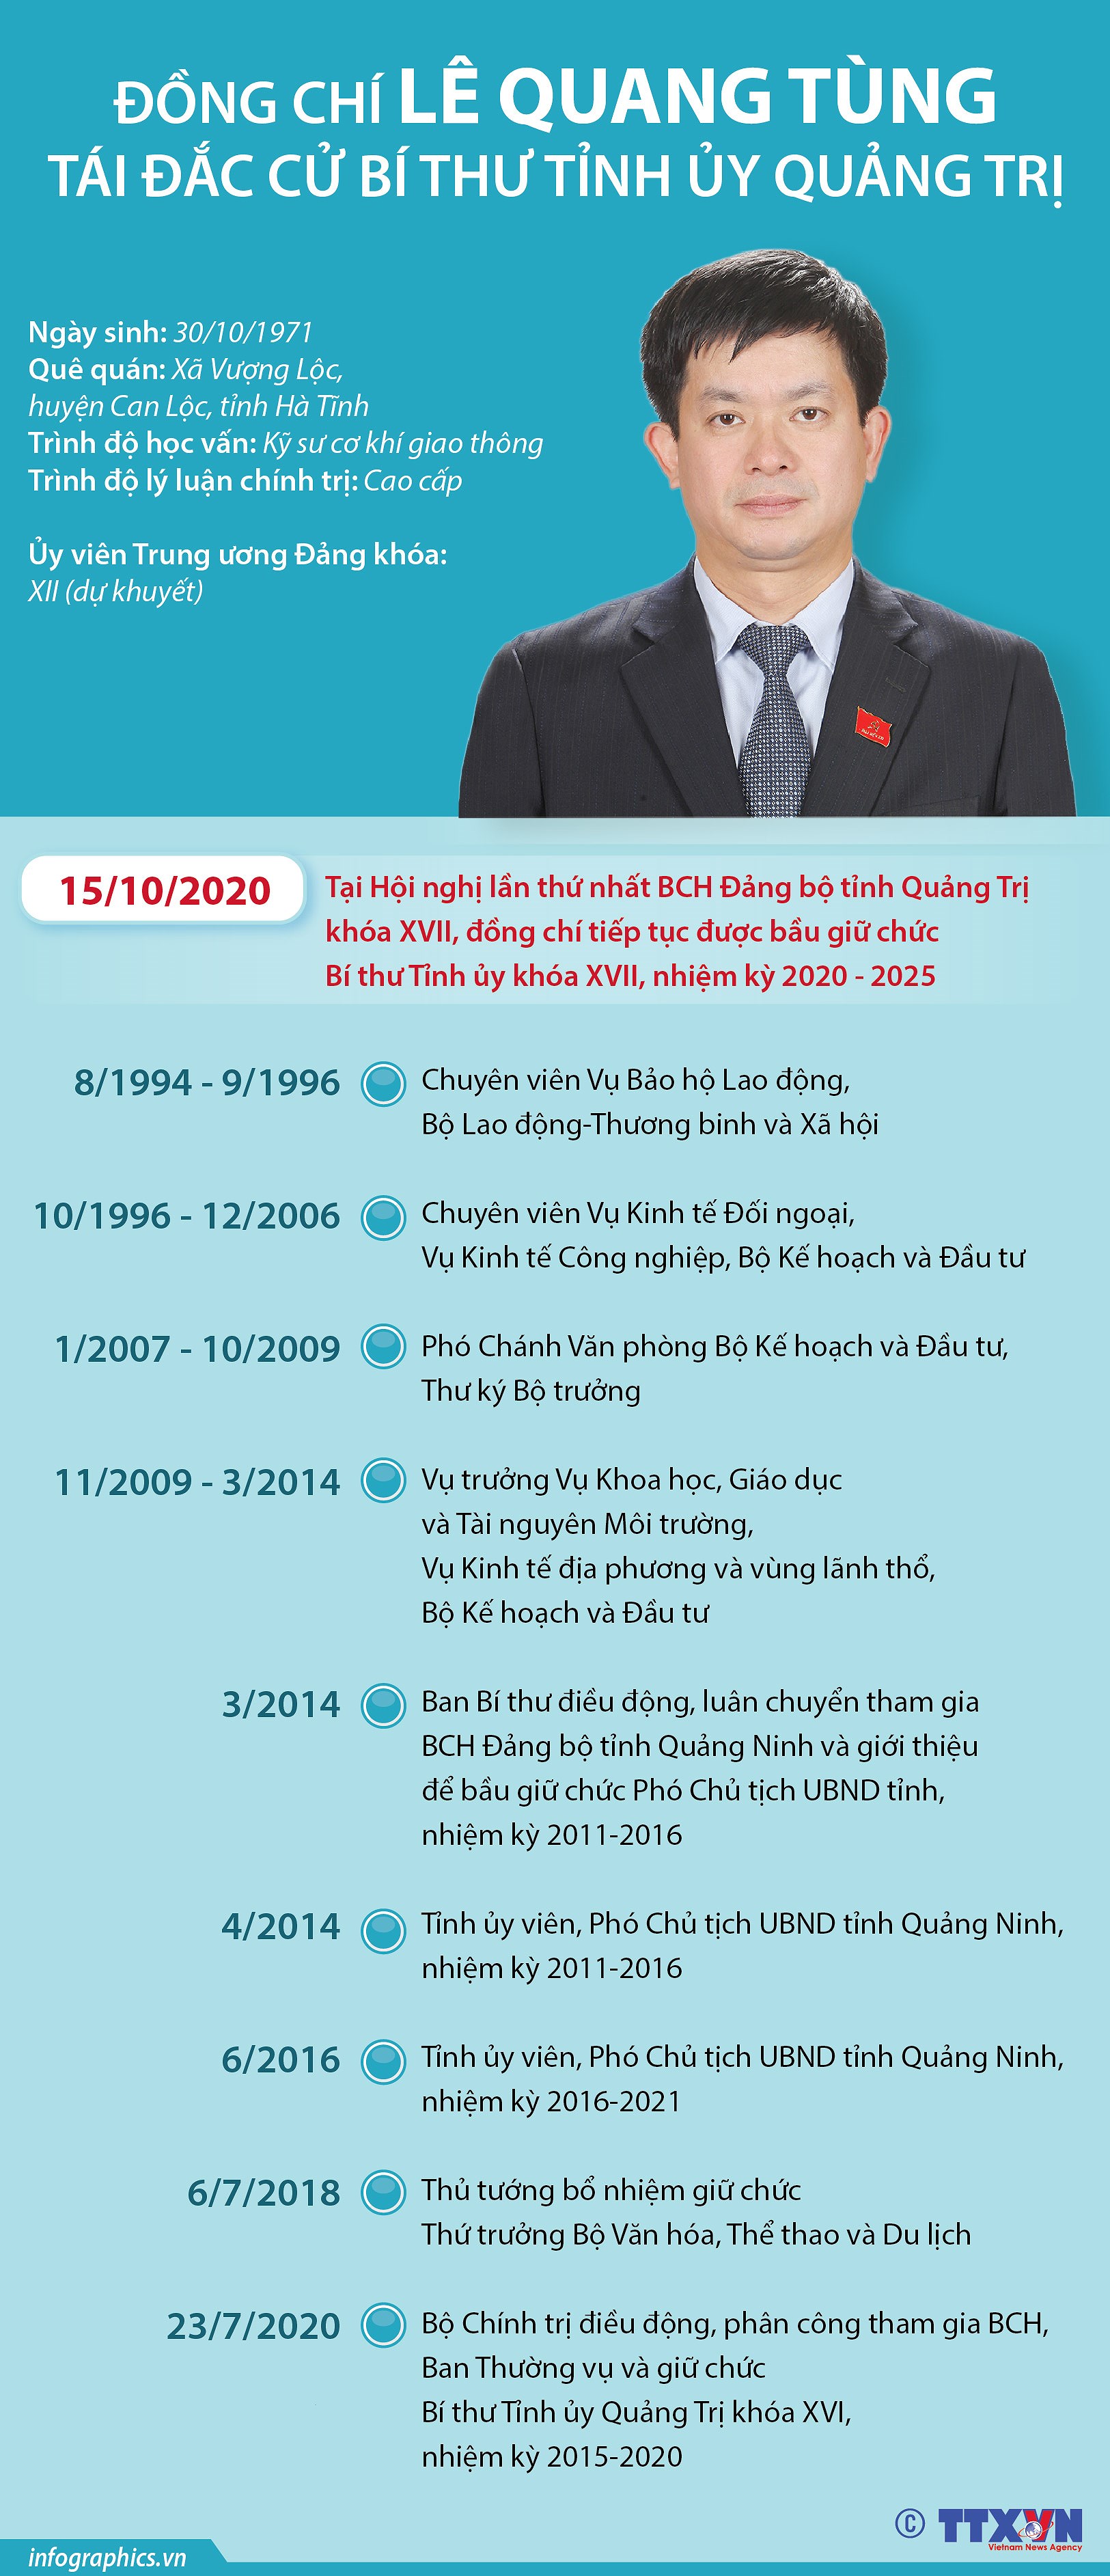 [Infographics] Ong Le Quang Tung tai dac cu Bi thu Tinh uy Quang Tri hinh anh 1